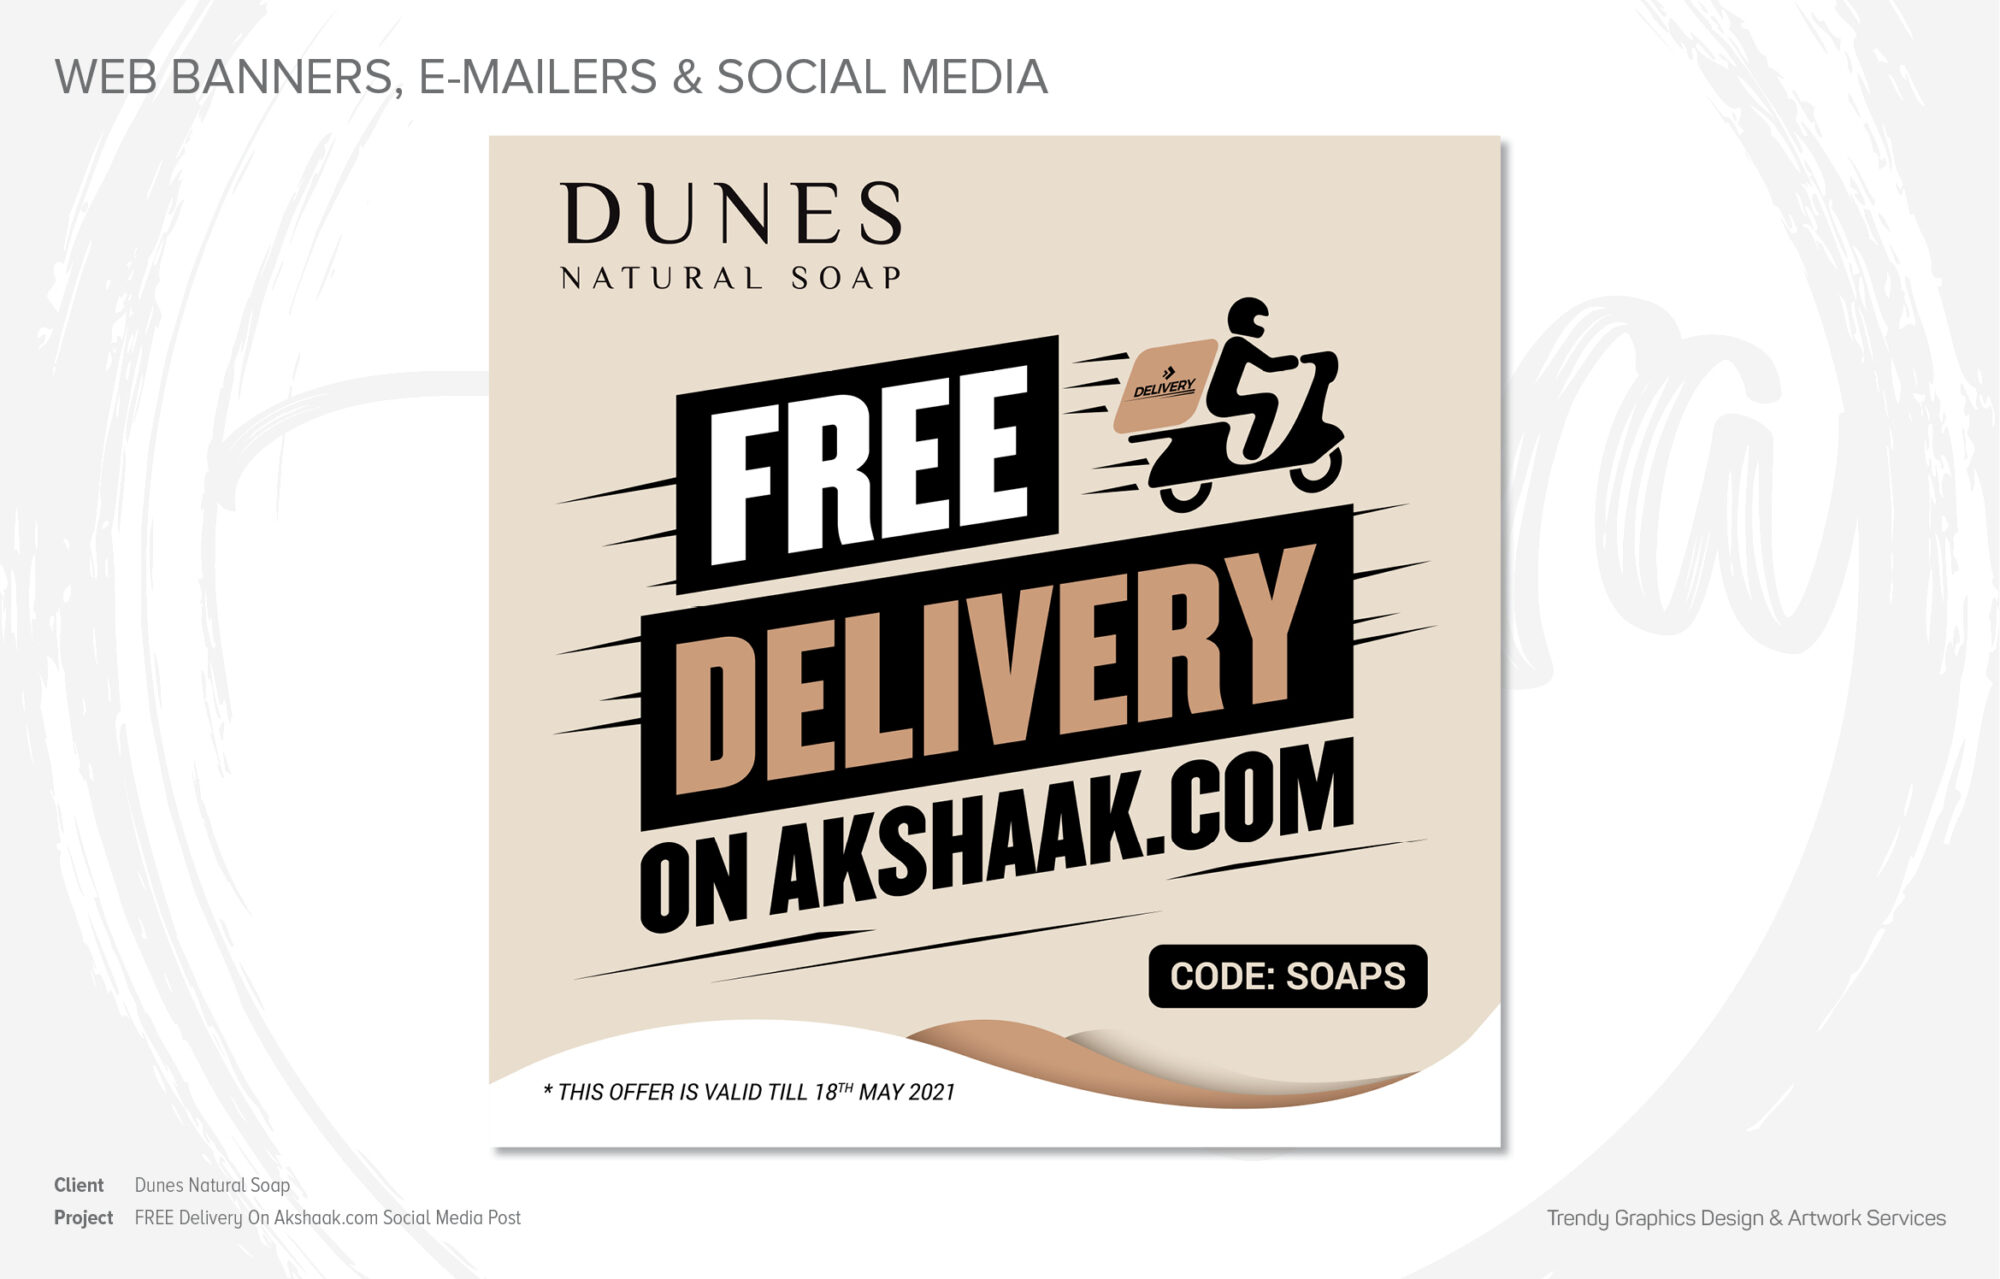 Dunes Natural Soap – FREE Delivery On akshaak.com Social Media Post